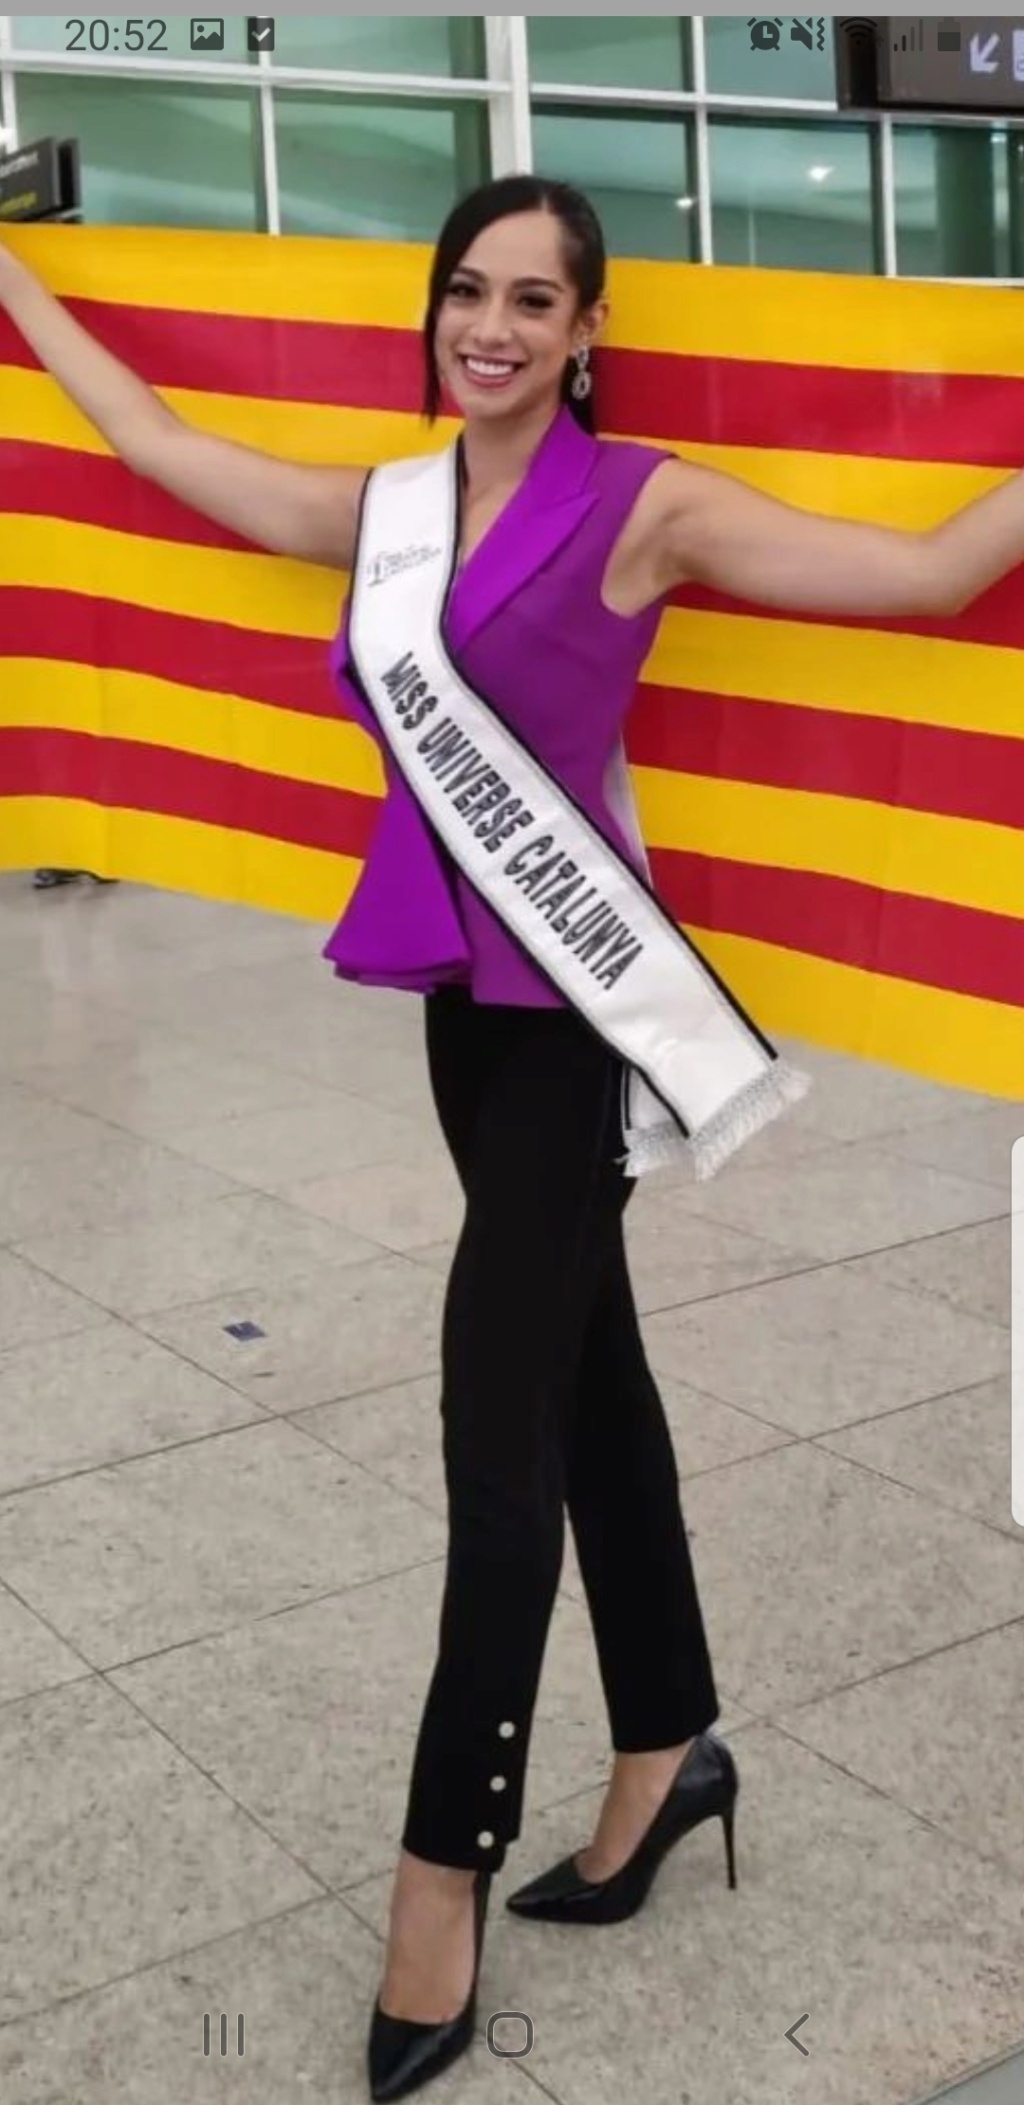 Conoce a las candidatas oficiales de Miss Universe Spain 2022. final: 10 sep. - Página 4 Screen38